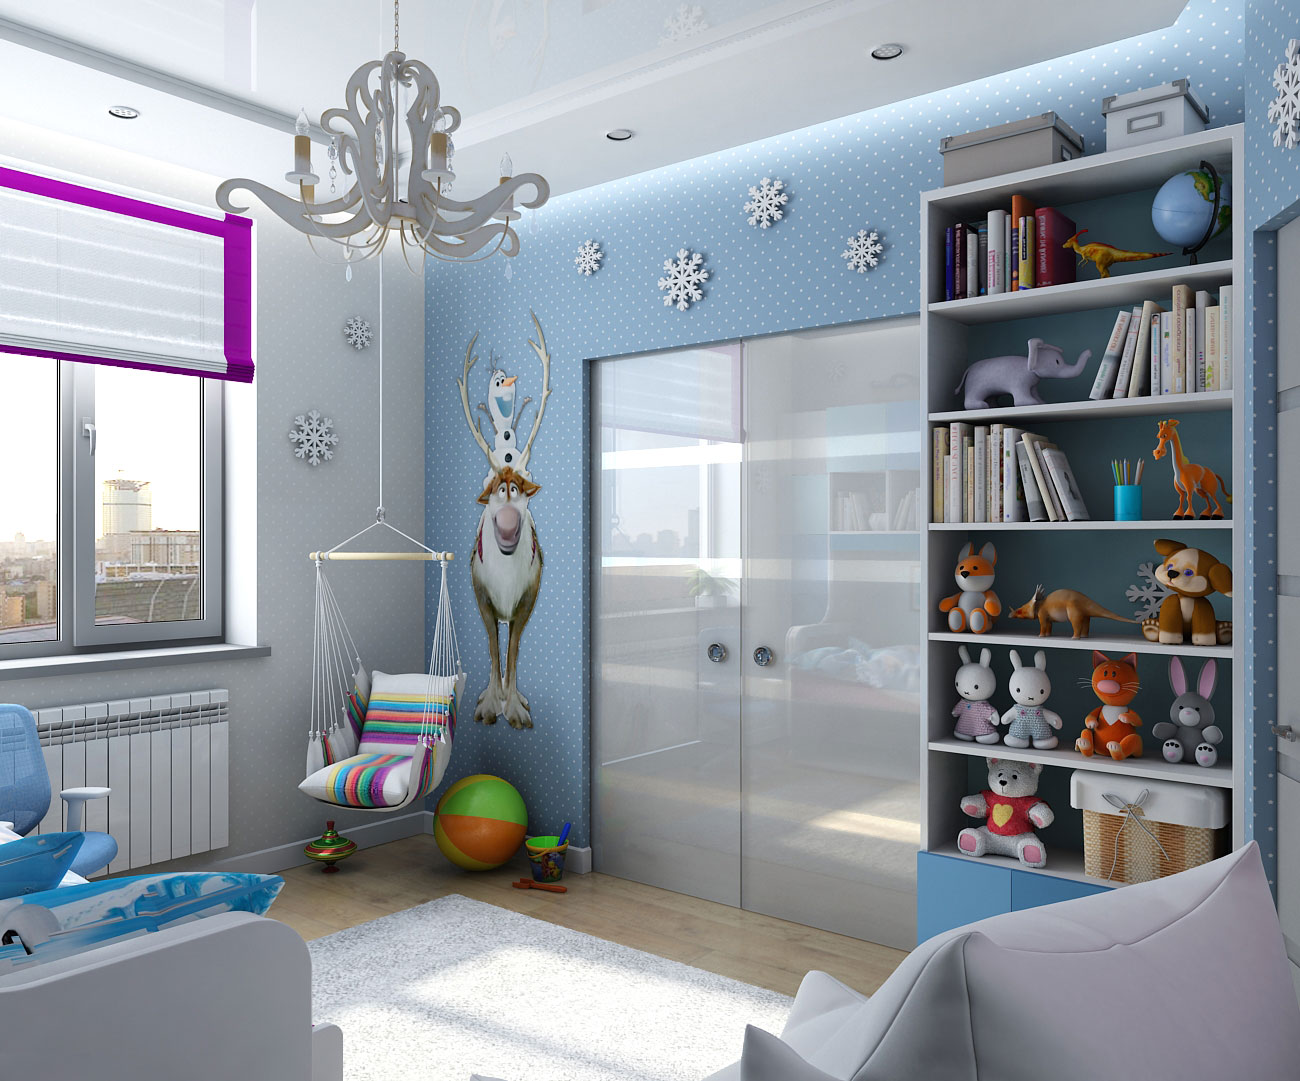 Interior design in stile dei figli di "congelato" in Chernigov in 3d max vray 1.5 immagine